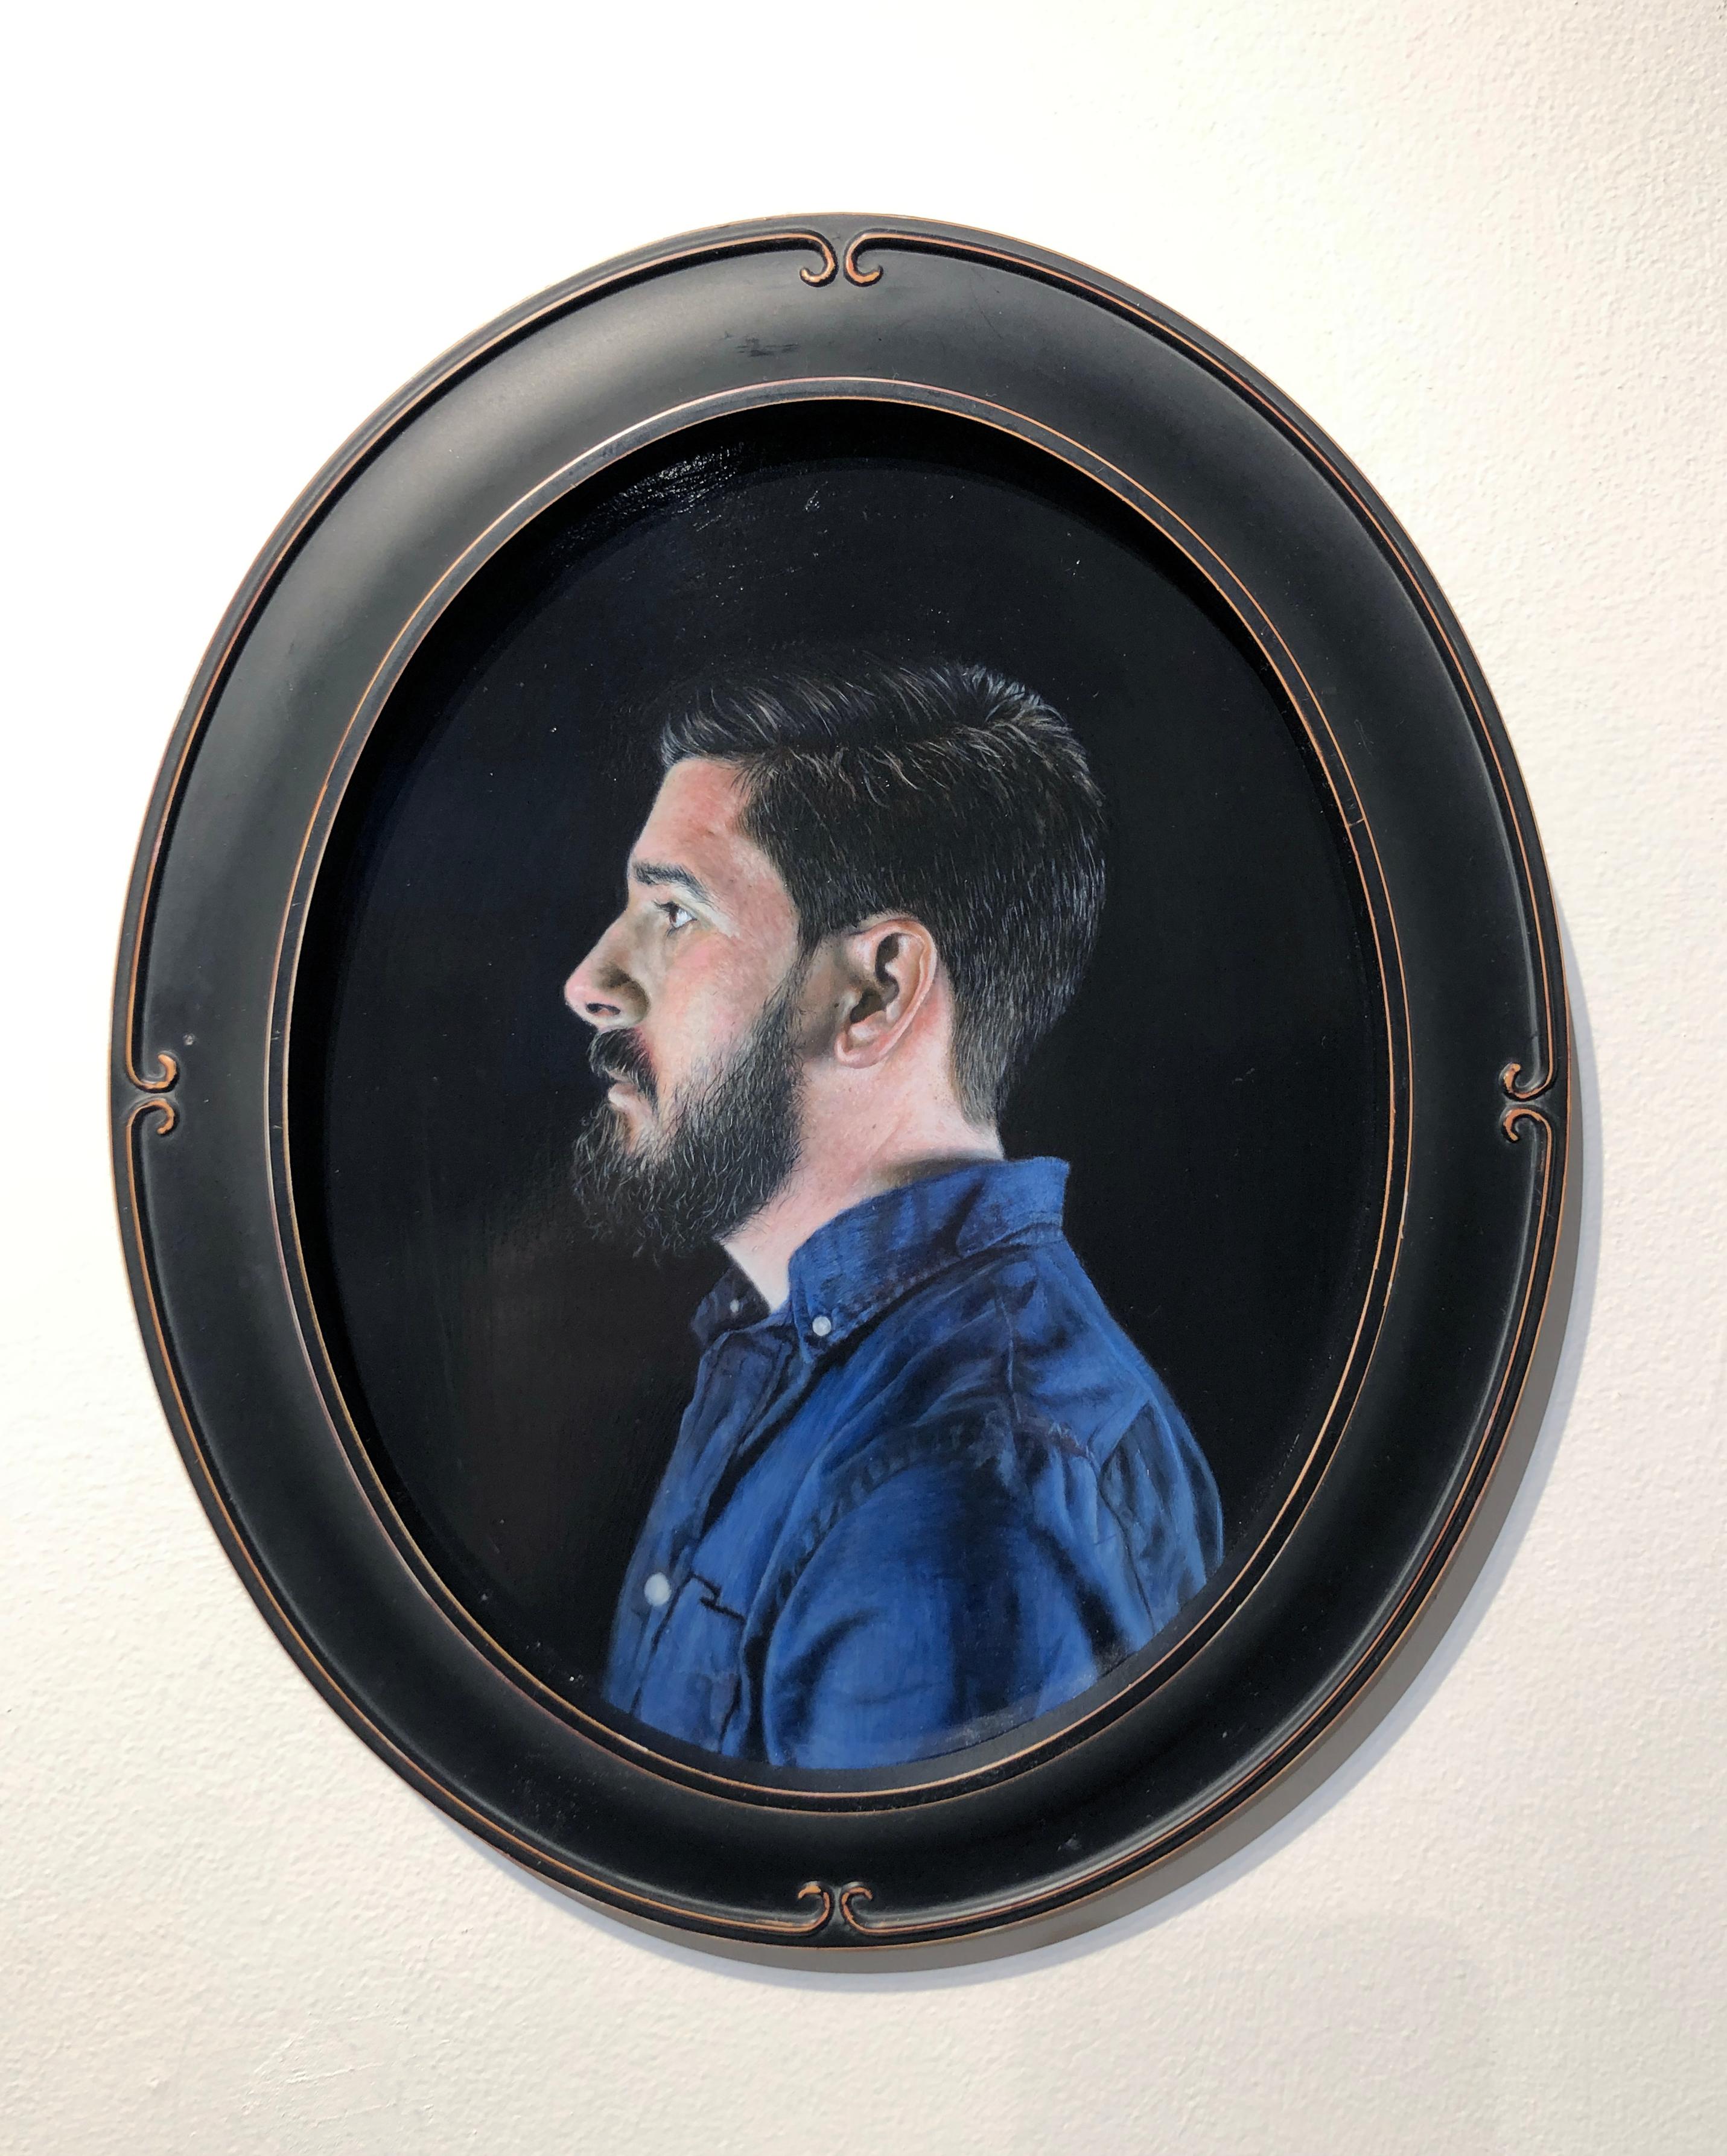 Profil des Künstlers - Ovales Porträtgemälde in außergewöhnlicher Detailgenauigkeit (Zeitgenössisch), Painting, von Matthew Cook